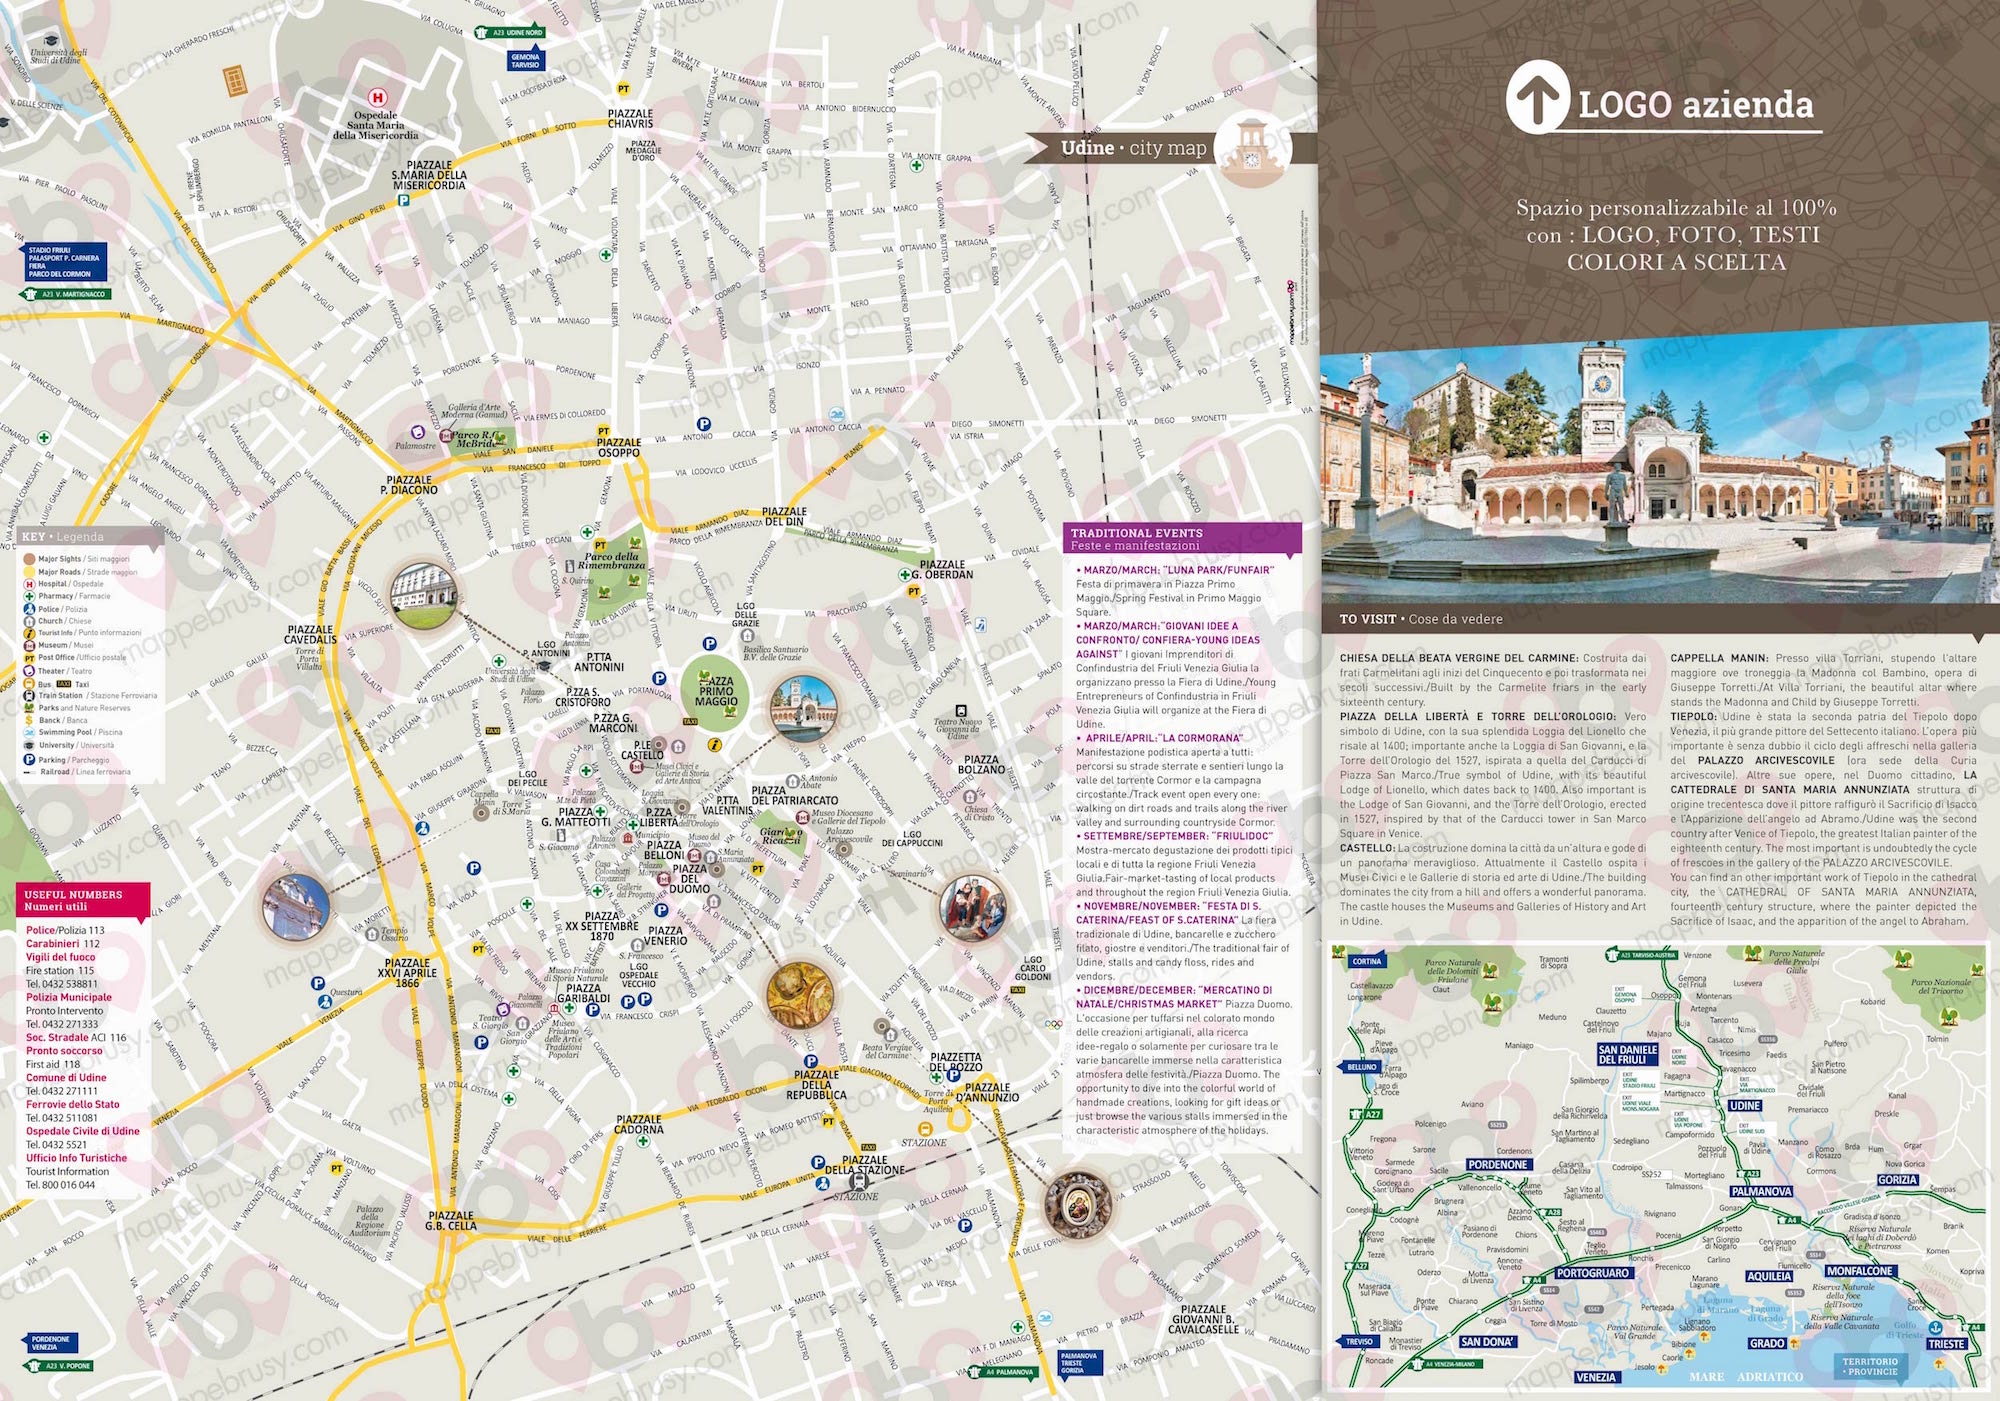 Mappa di Udine - Udine city map - mappa Udine - mappa personalizzata di Udine